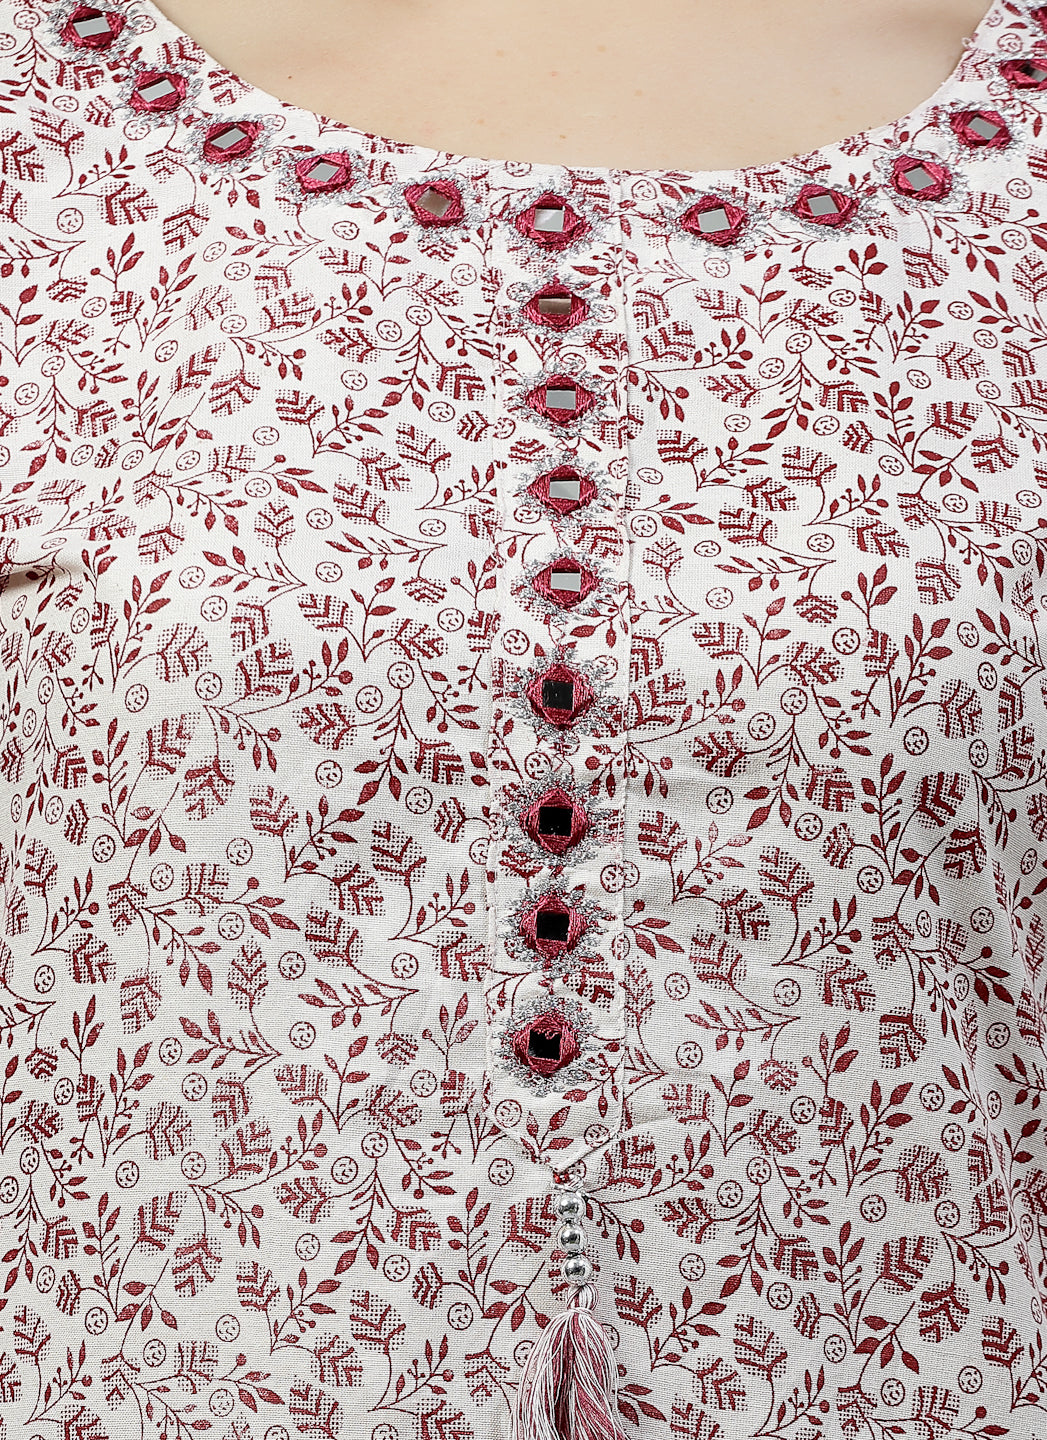 "Cotton Kurta Pant Set with Dupatta: Elegant Mirror Work on Neck for Timeless Style"